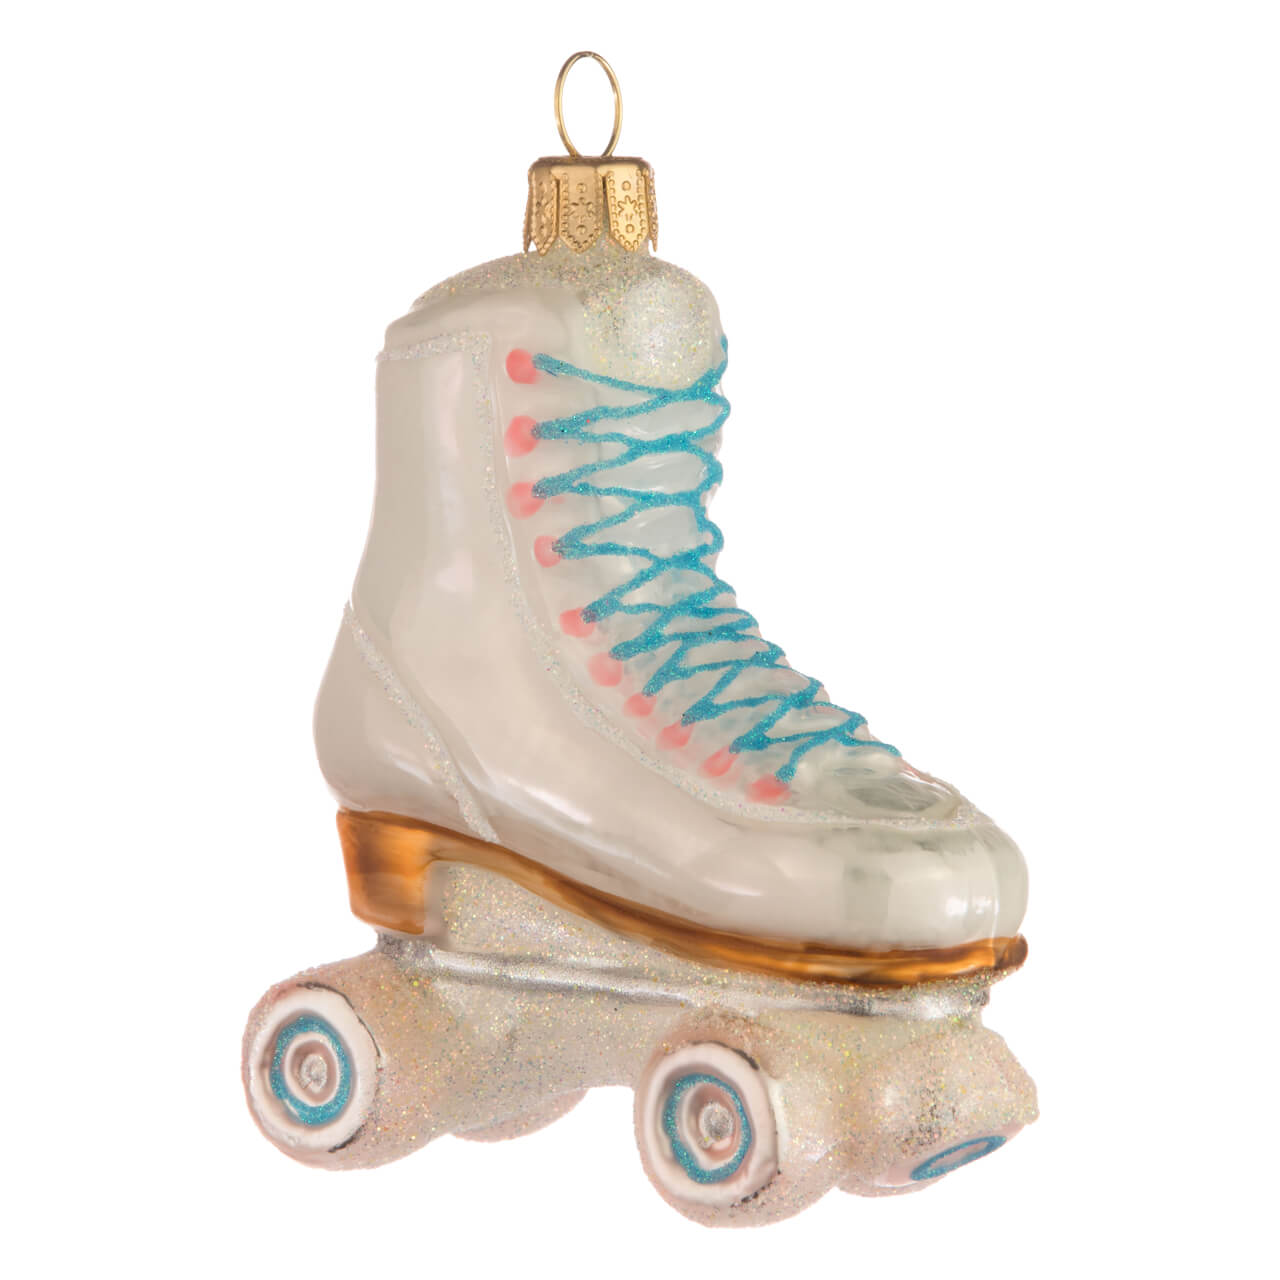 Roller skate